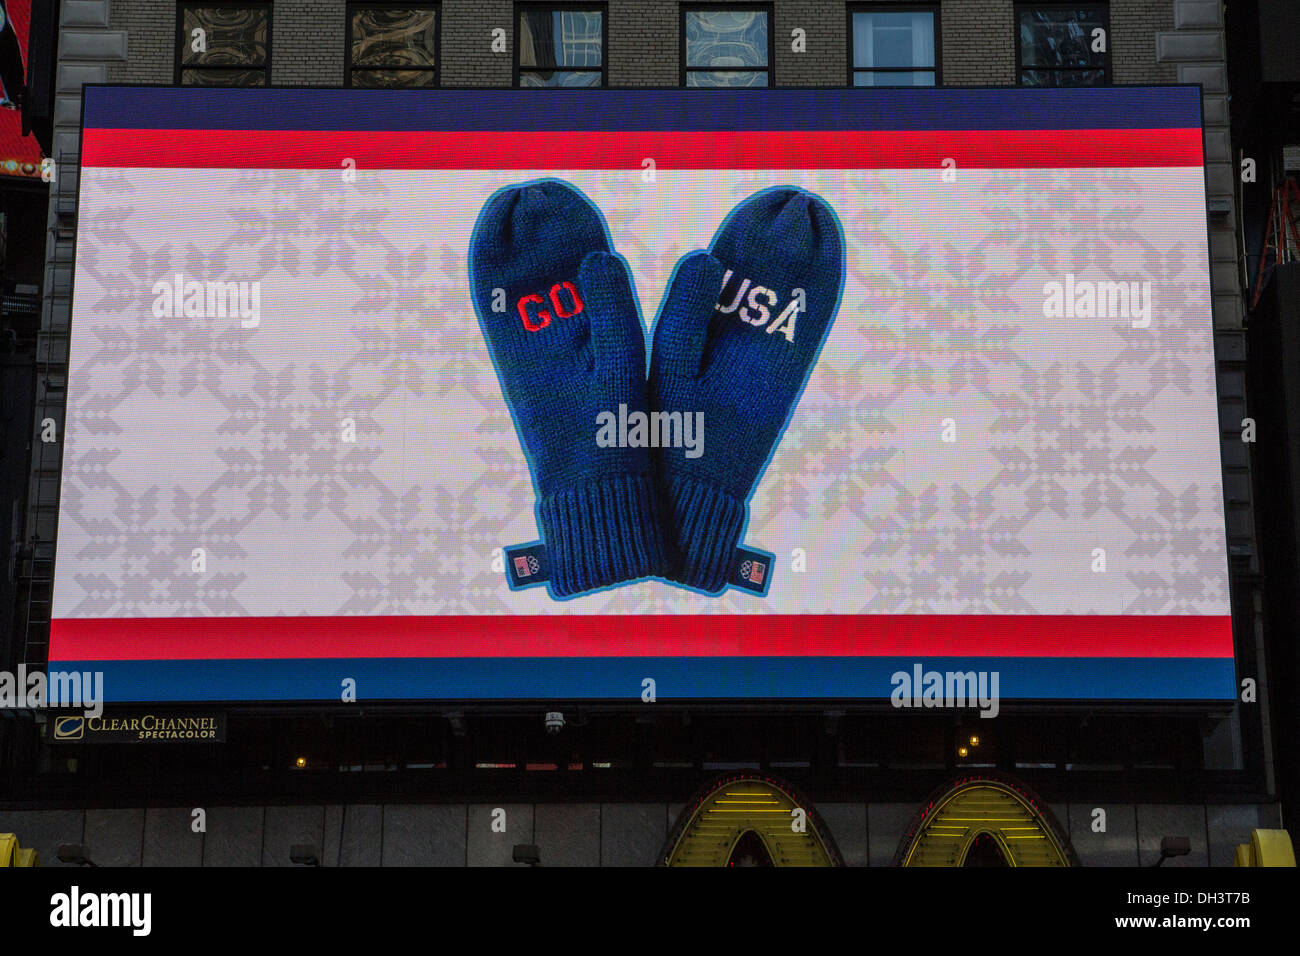 Go USA mitones en la placa electrónica en el USOC 100 día cuenta atrás para los Juegos Olímpicos de invierno de Sochi 2014 Foto de stock